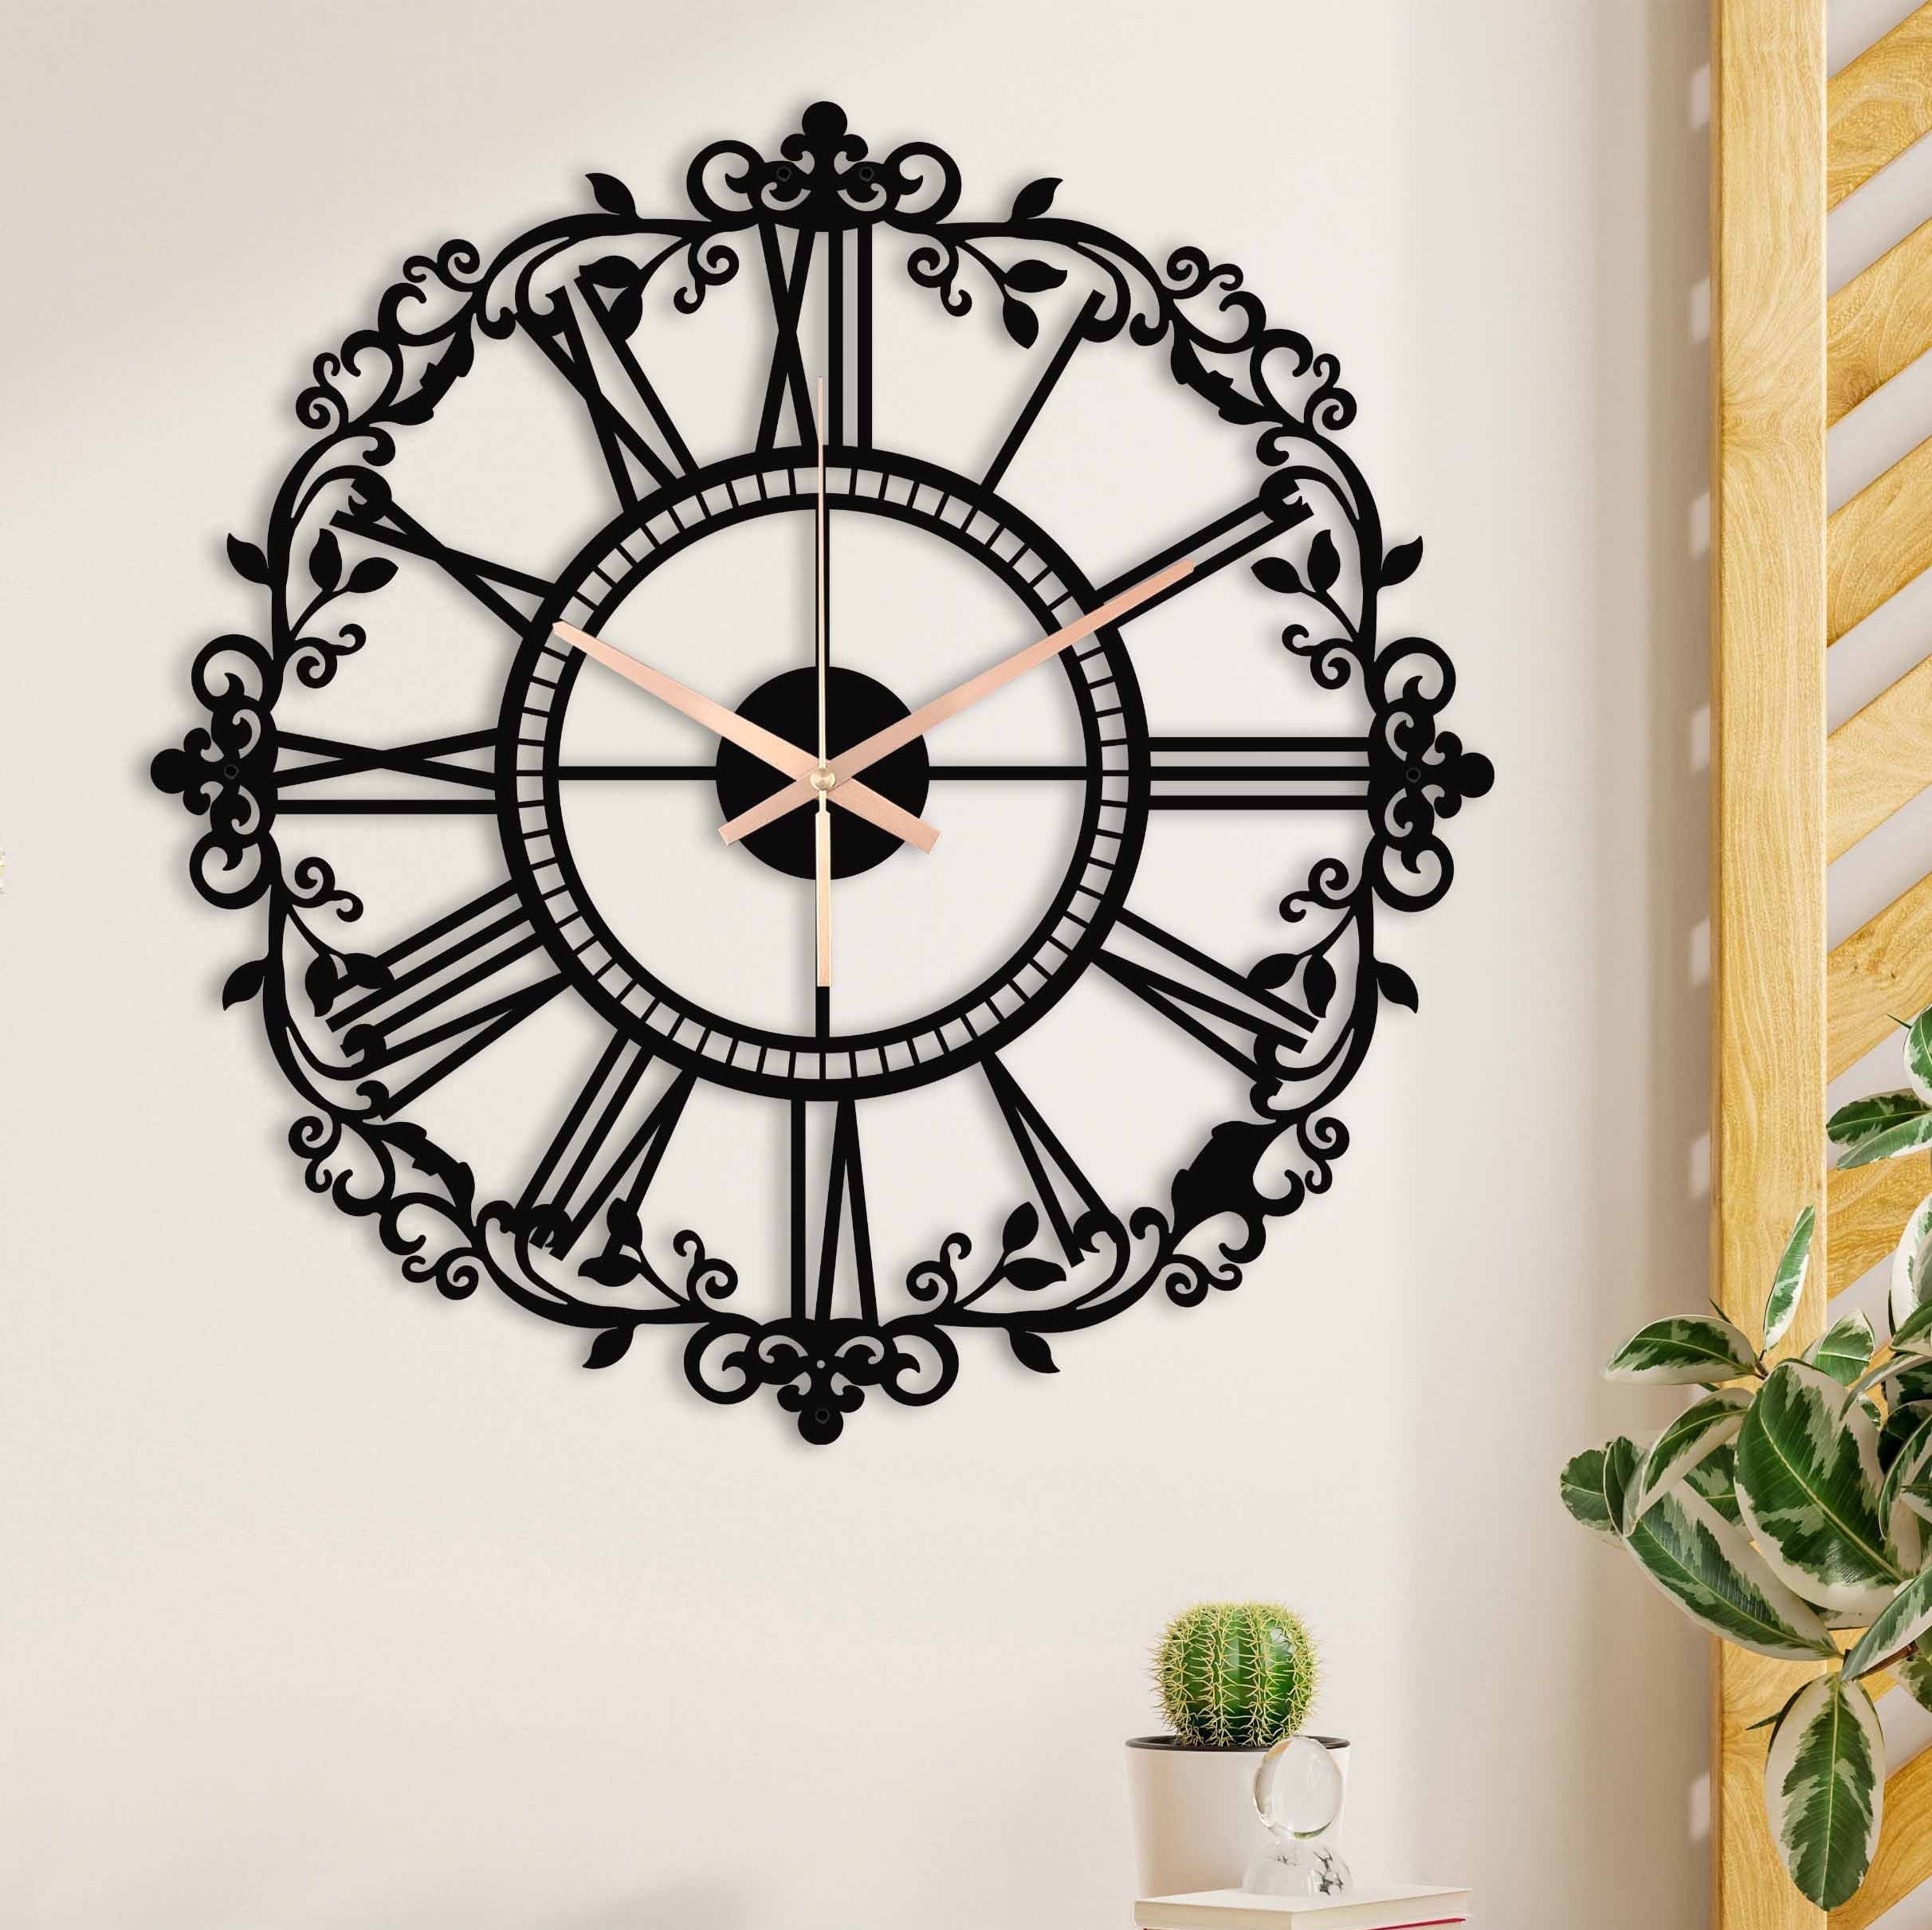 Modern Wall Clock, Black Wall Clock, Silent Large Wall Clock, Unique Wall Clock, Metal Wall Clock, Decorative New Home Gift, Laser Cut Clock